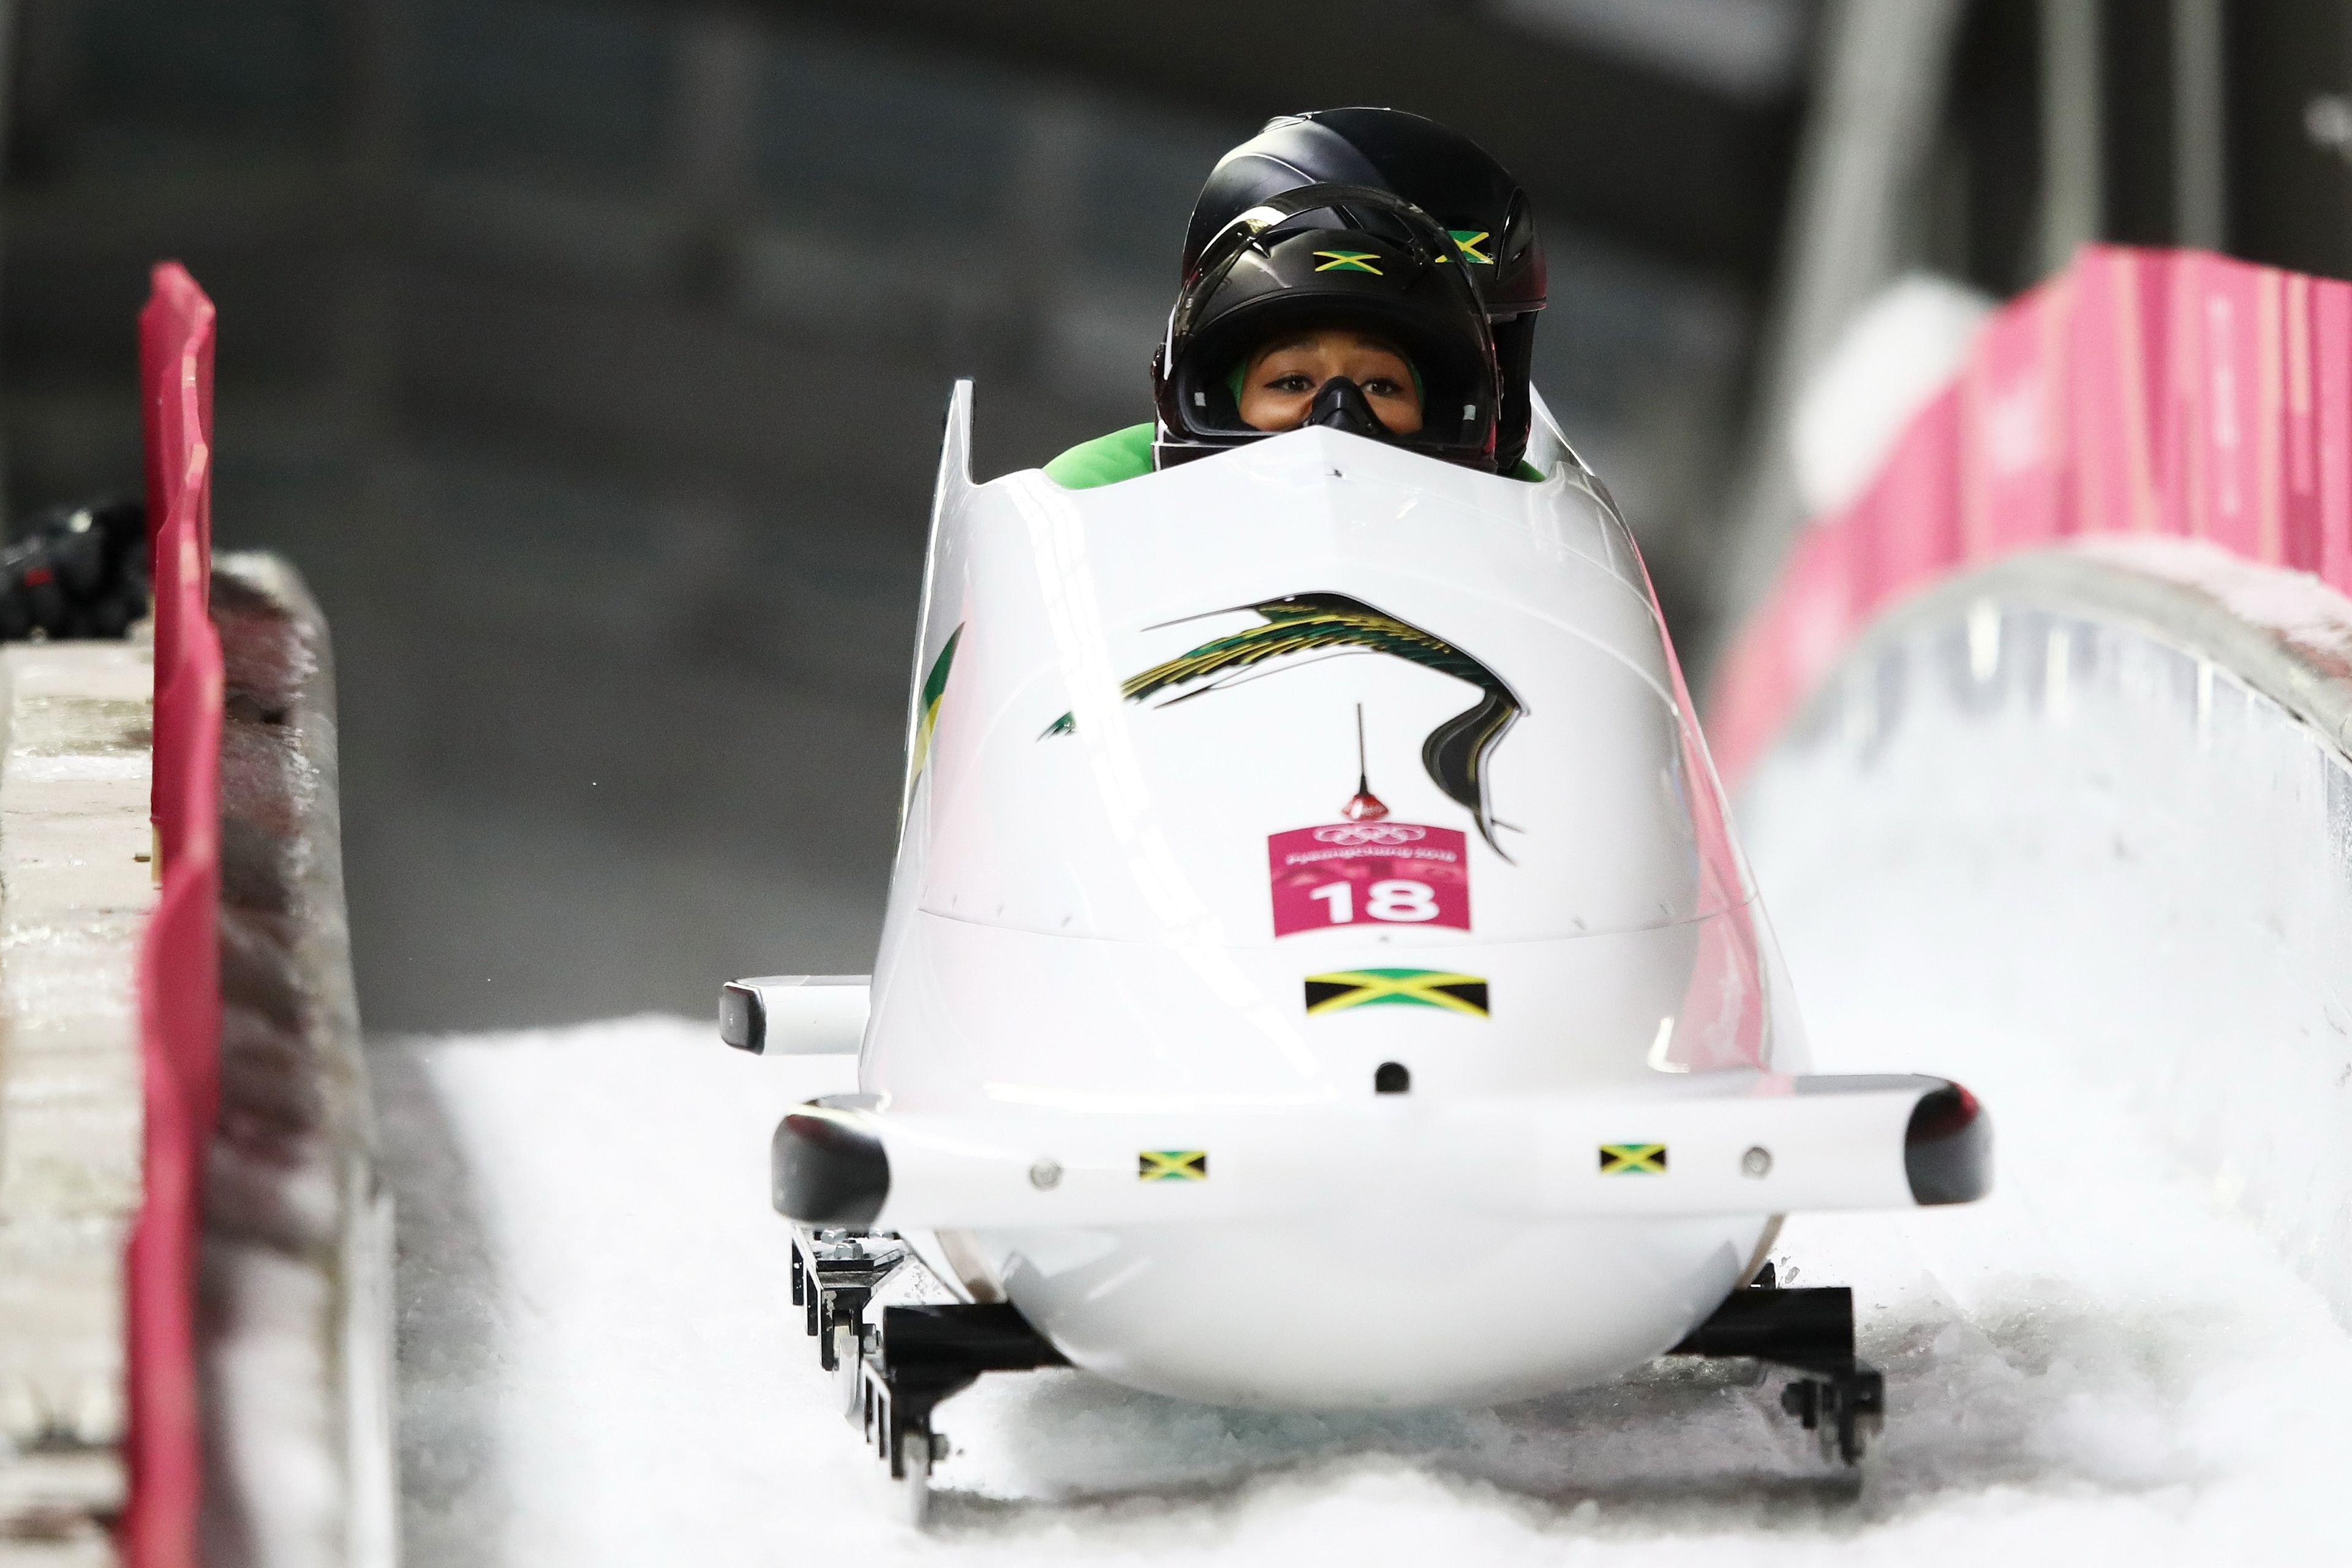 A 2018-as téli olimpiára párosban kijutottak az ország első női bobosai, Jazmine Fenlator-Victorian és Carrie Russell / Fotó: Getty Images